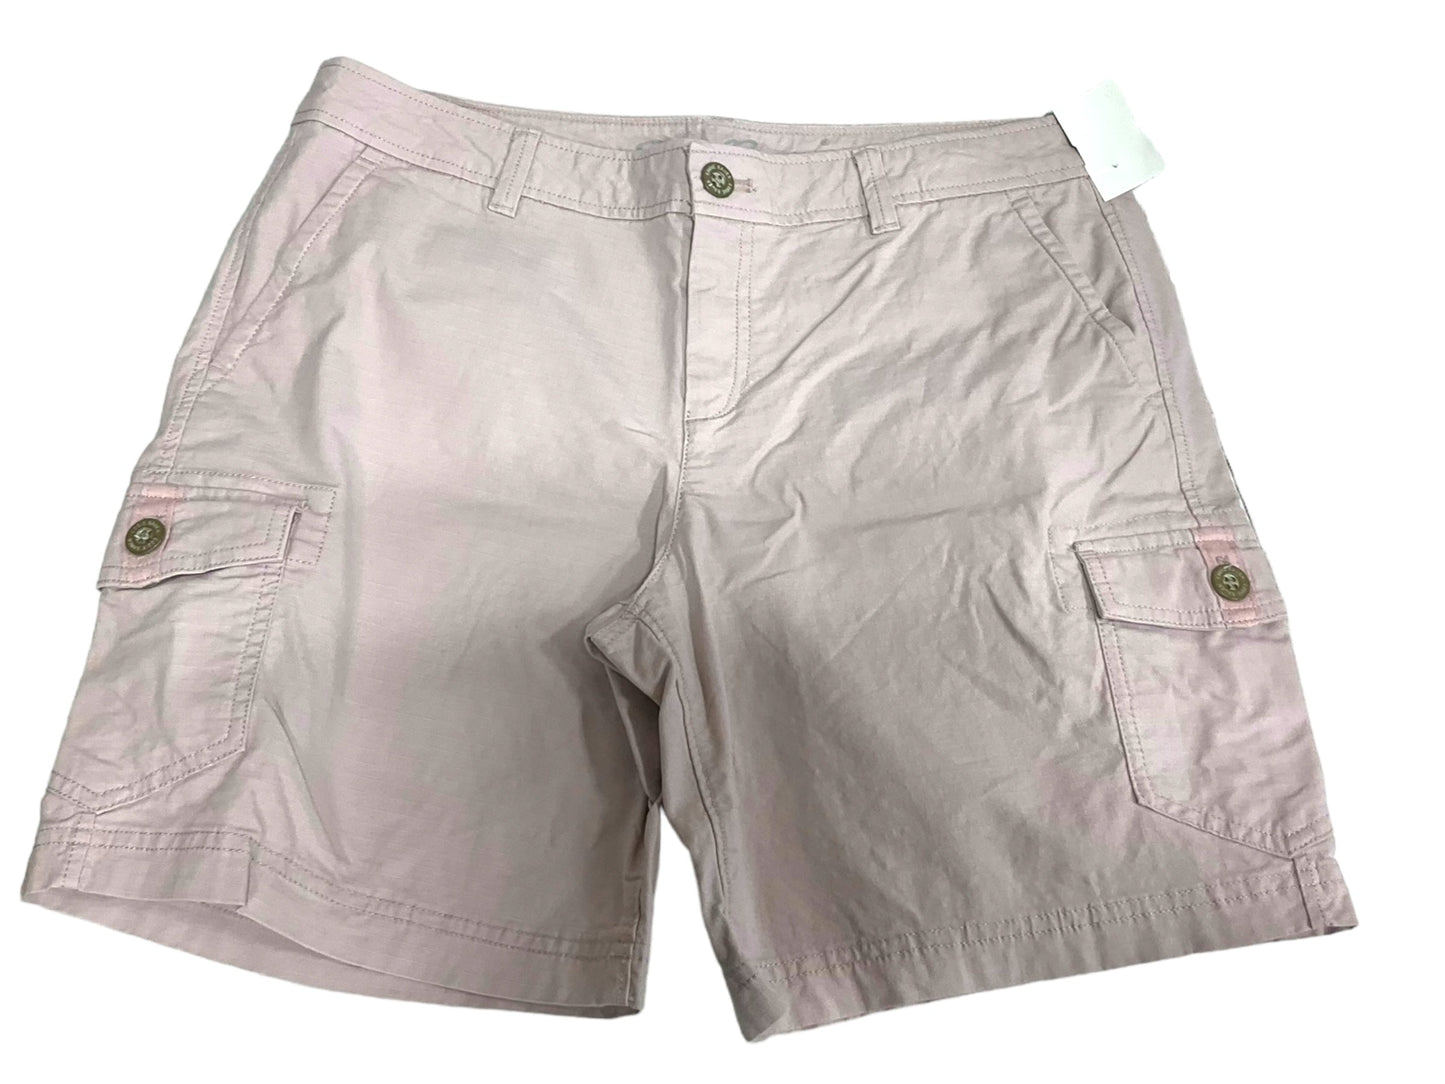 Pink Shorts Eddie Bauer, Size 8